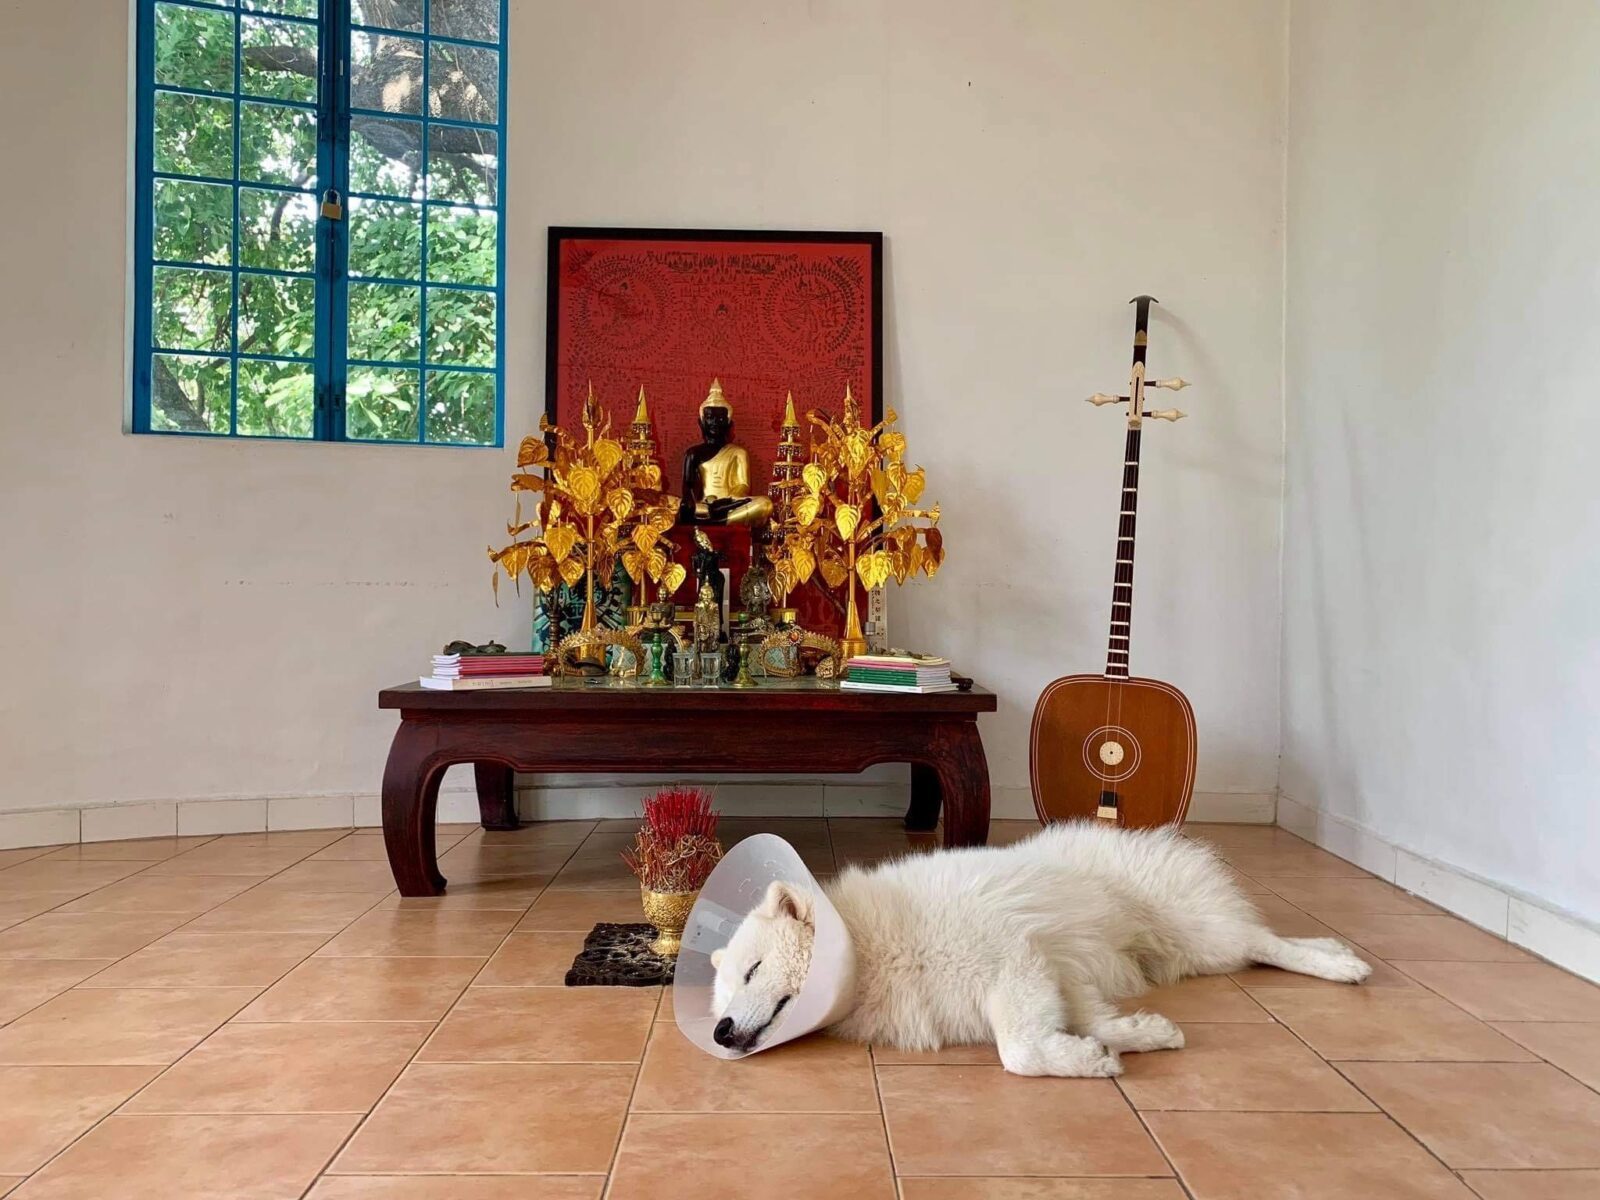 Weißer Hund liegt mit einer Halskrause auf einem orangenen Fliesen-Boden vor einem Buddhistischen Hausaltar